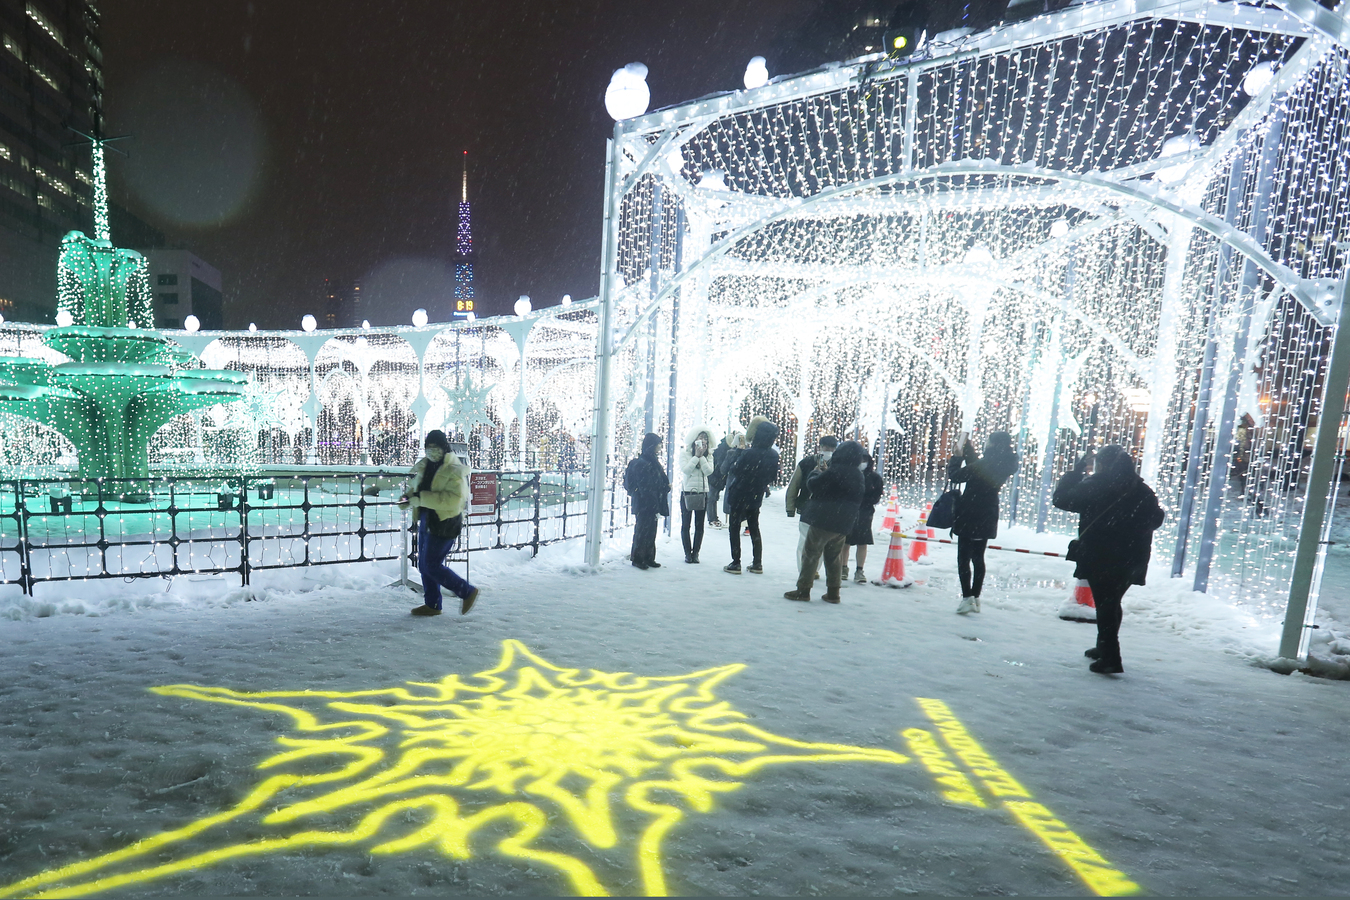 ซัปโปโร โอโดริ คริสต์มาส มาร์เก็ต แอนด์ อิลลูมิเนชั่น (Sapporo Odori Christmas market & Illumination)